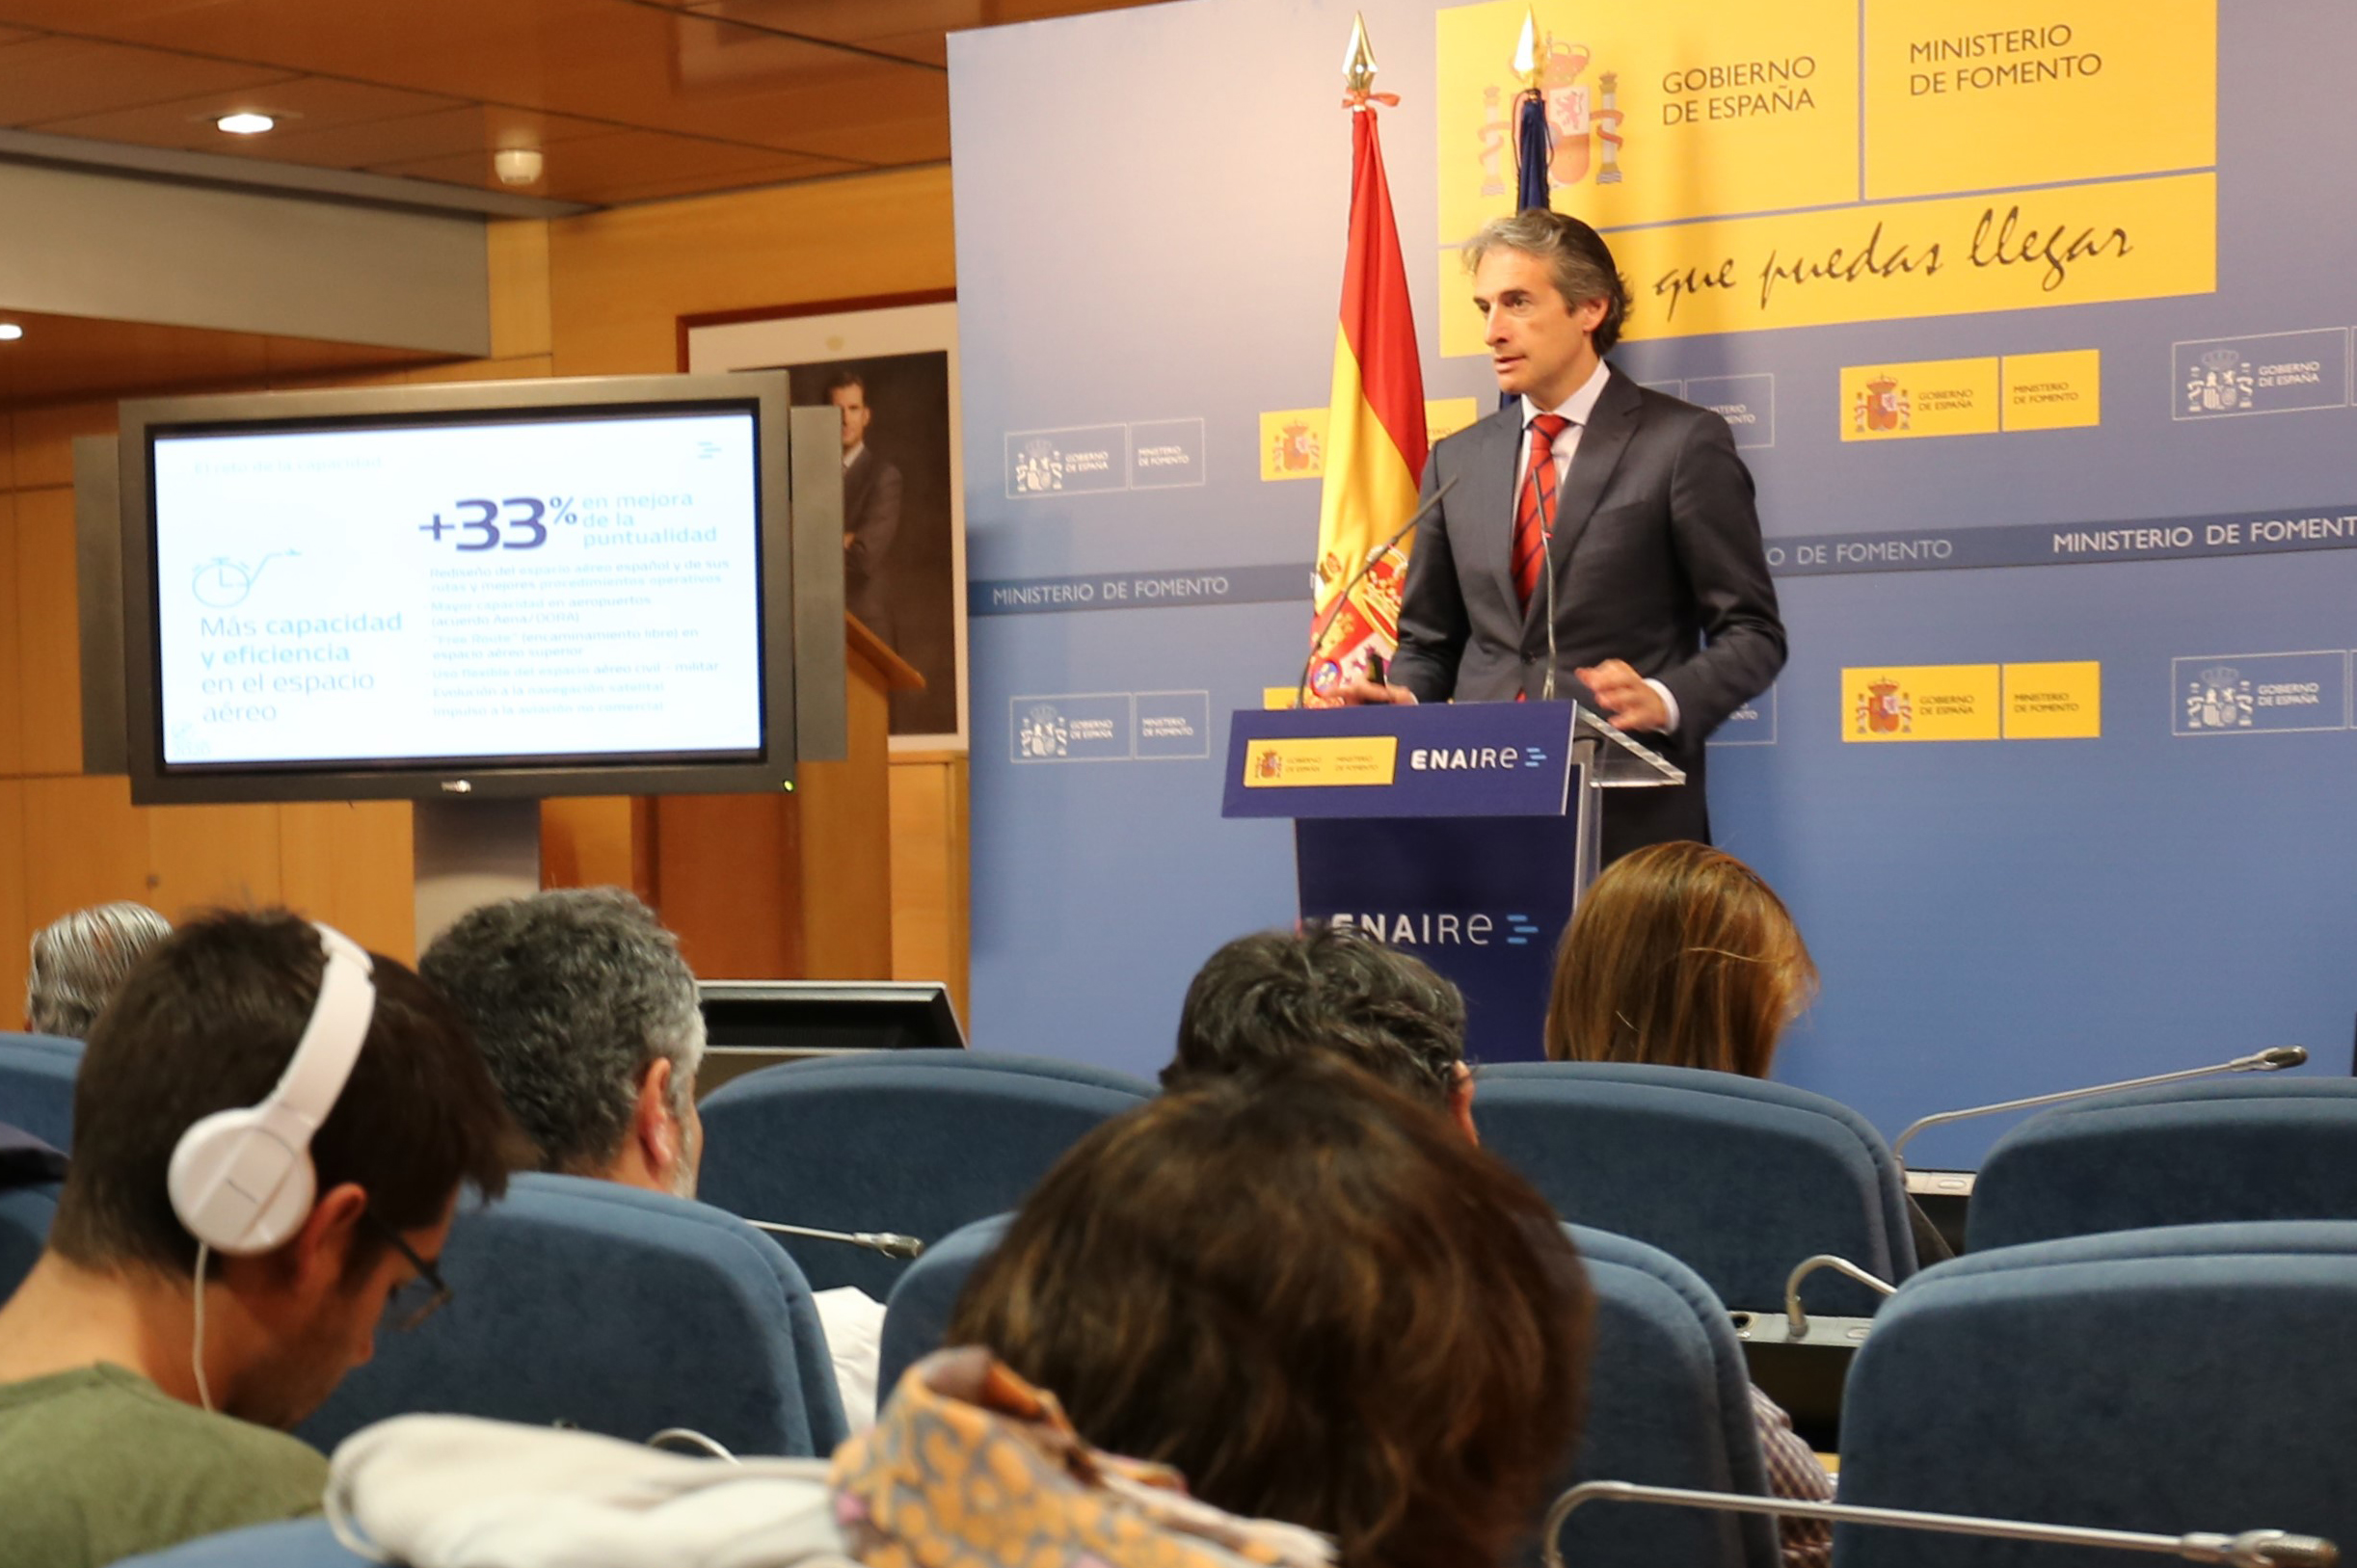 ESPAÑA:10/05/2017. El ministro de Fomento presenta el nuevo Plan de Navegación Aérea 2017-2020